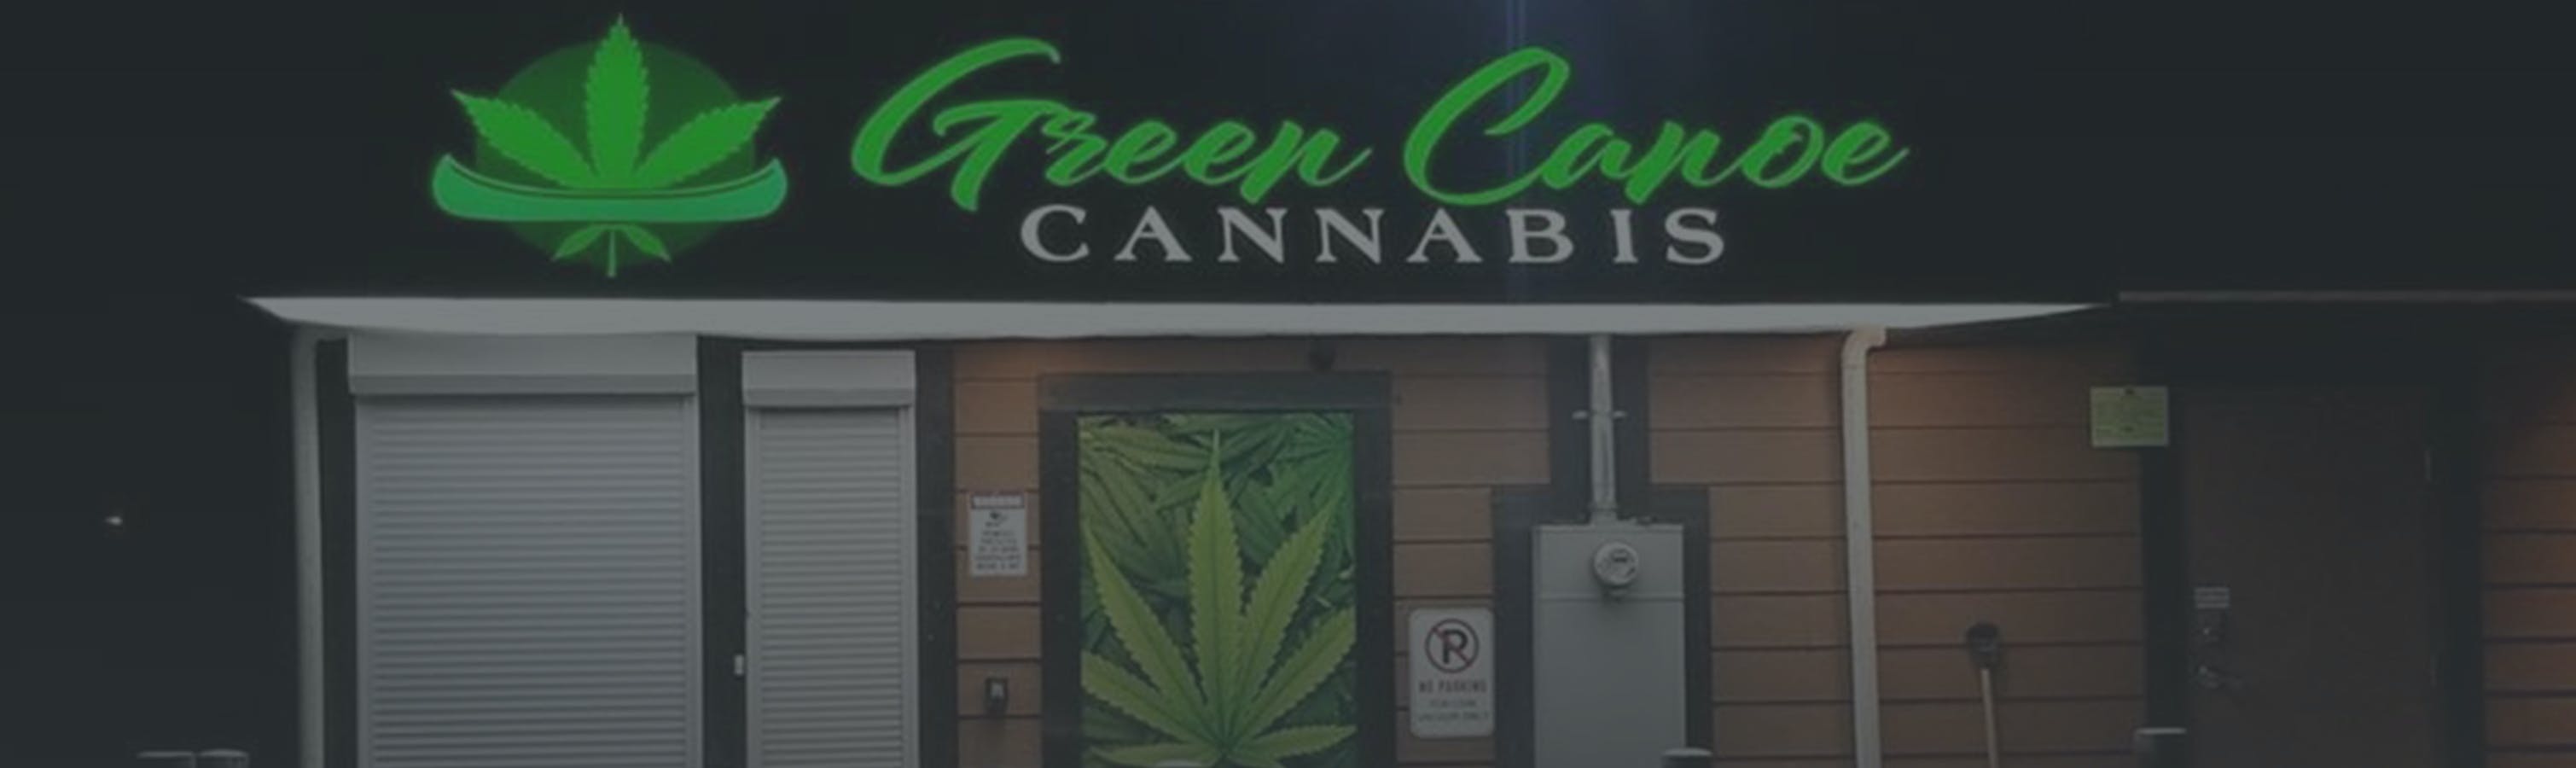 Cannabis Store Green Canoe Cannabis - 0